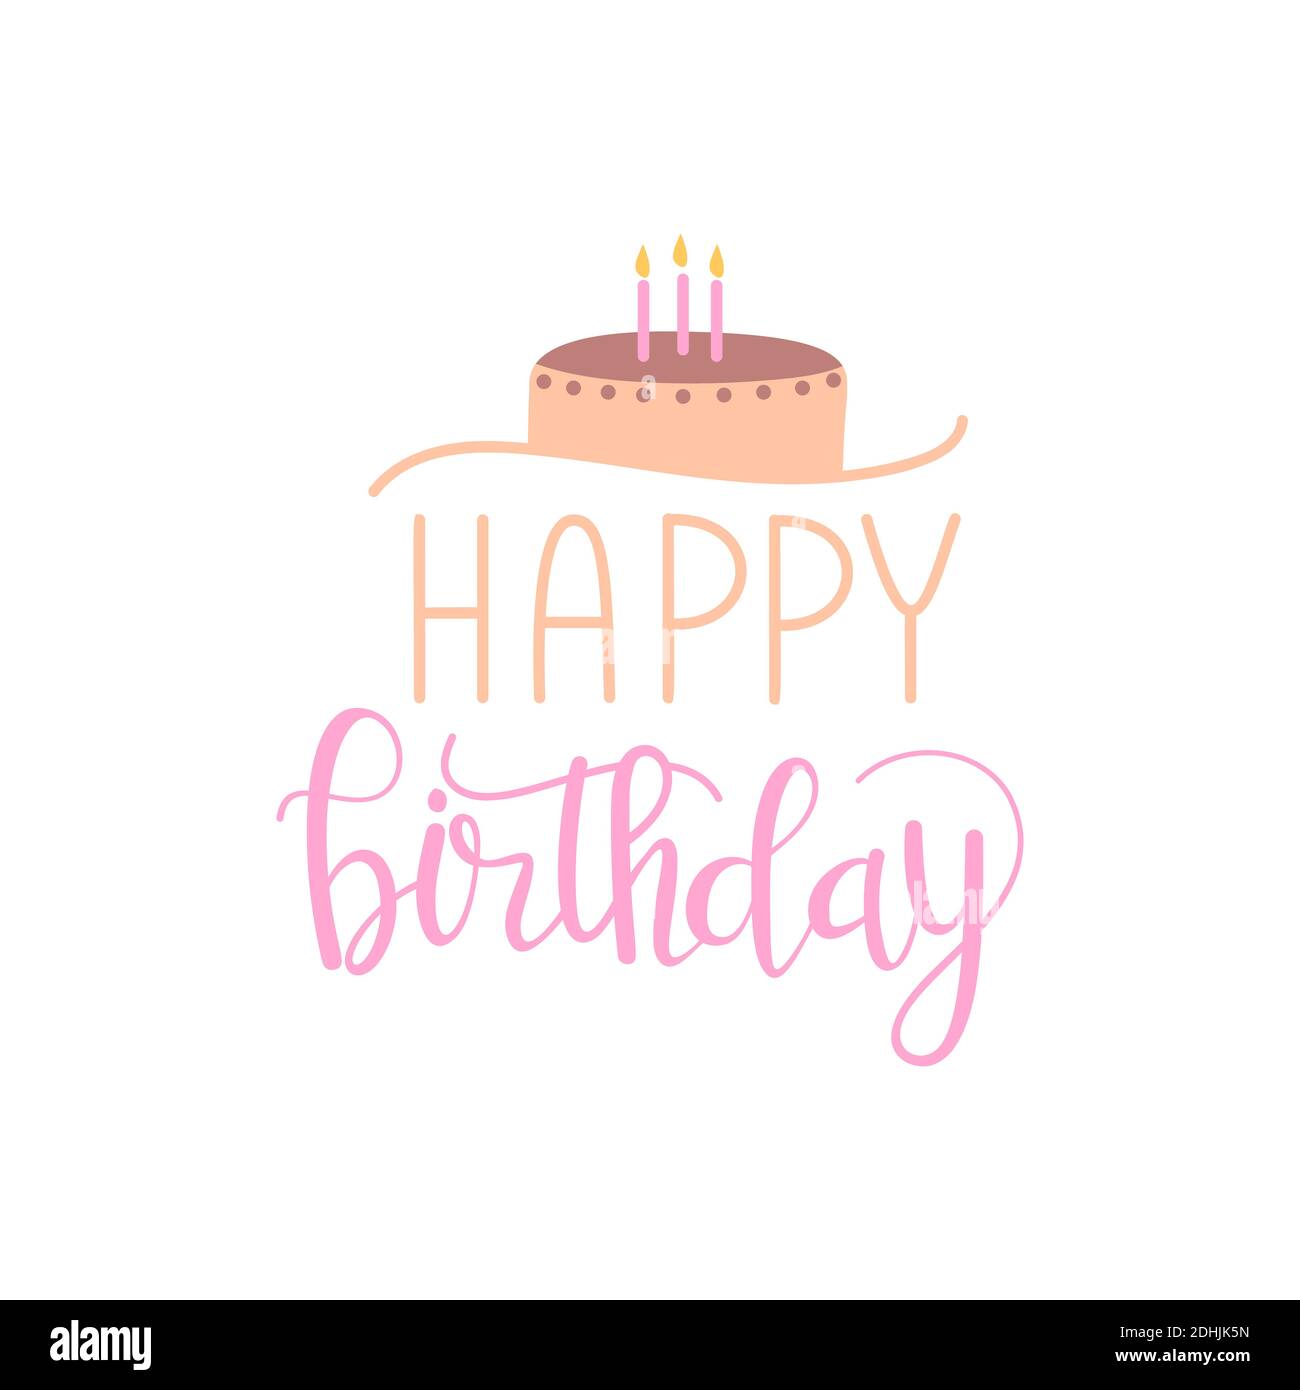 Happy birthday flat typographic card Stock Vector